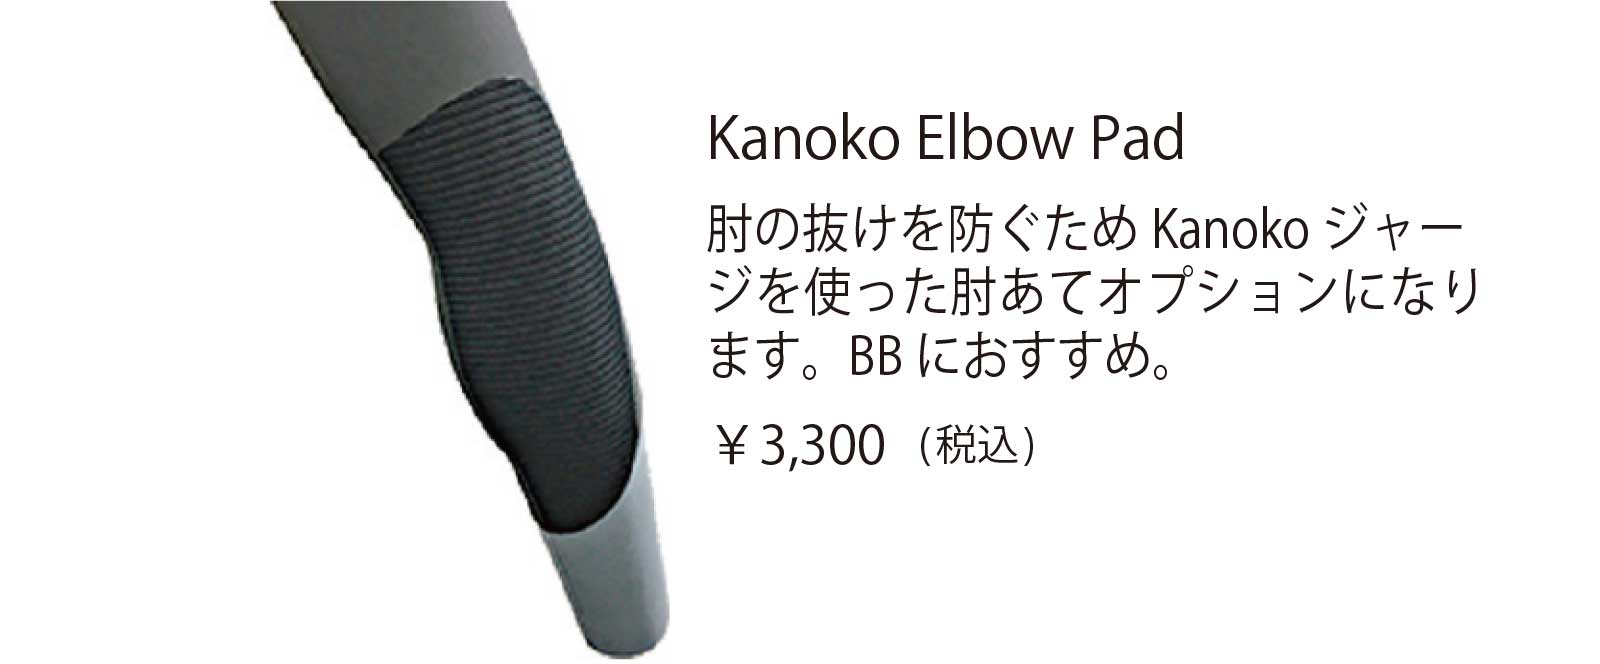 Kanoko Elbow Pad 肘の抜けを防ぐため Kanoko ジャー ジを使った肘あてオプションになり ます。BB におすすめ。